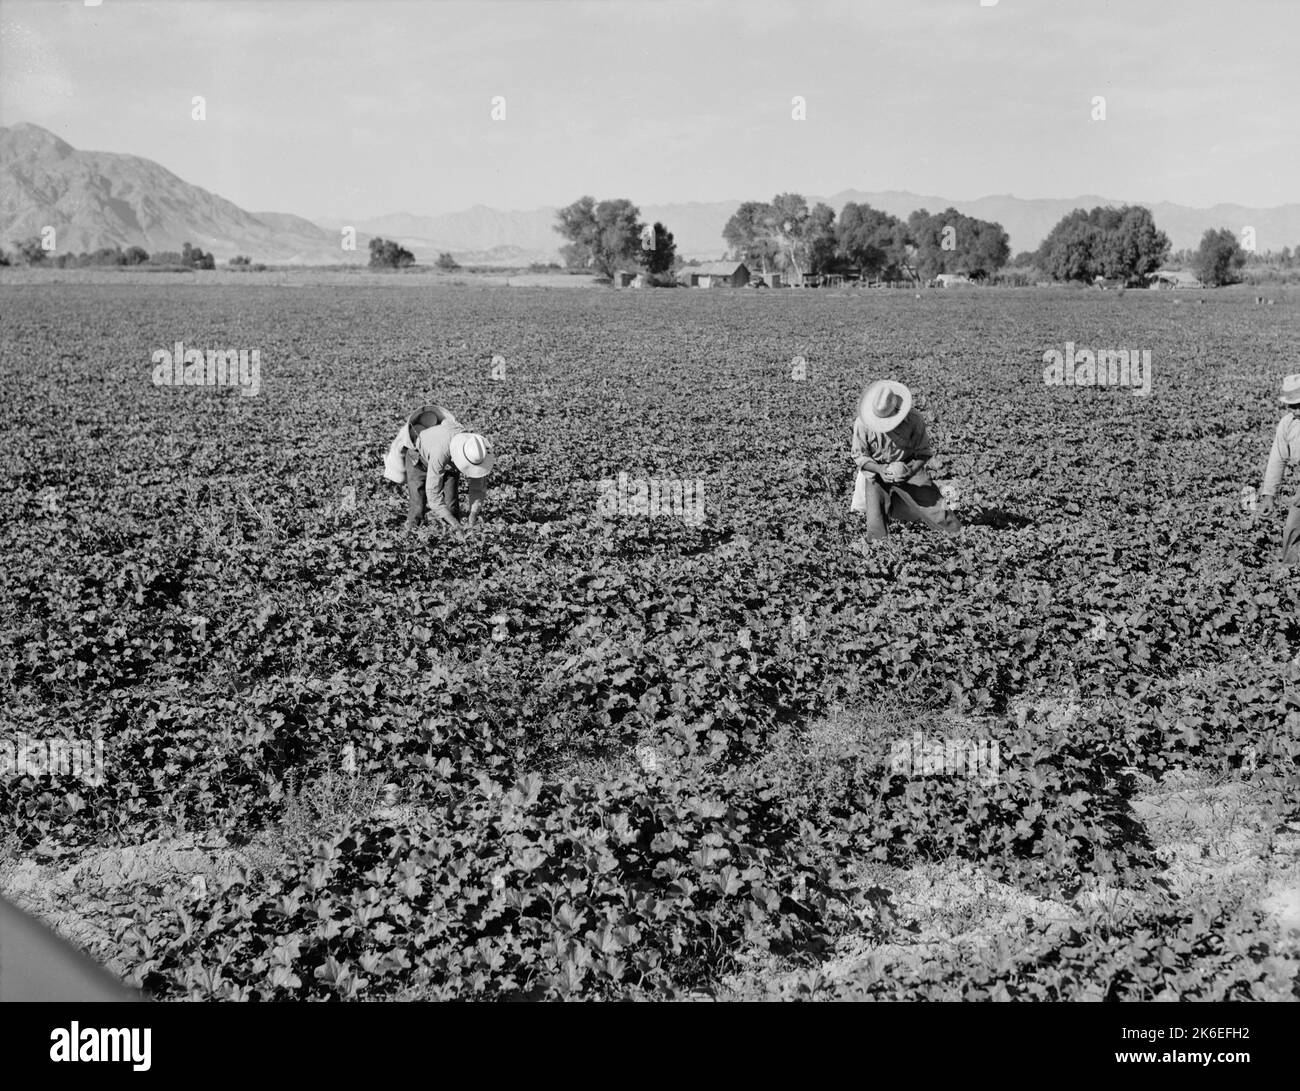 Mexikanische Landarbeiter in einem Cantaloupe-Feld. Imperial Valley, Kalifornien, USA. Foto von Dorothea lange ca. 1938, Fotograf Stockfoto